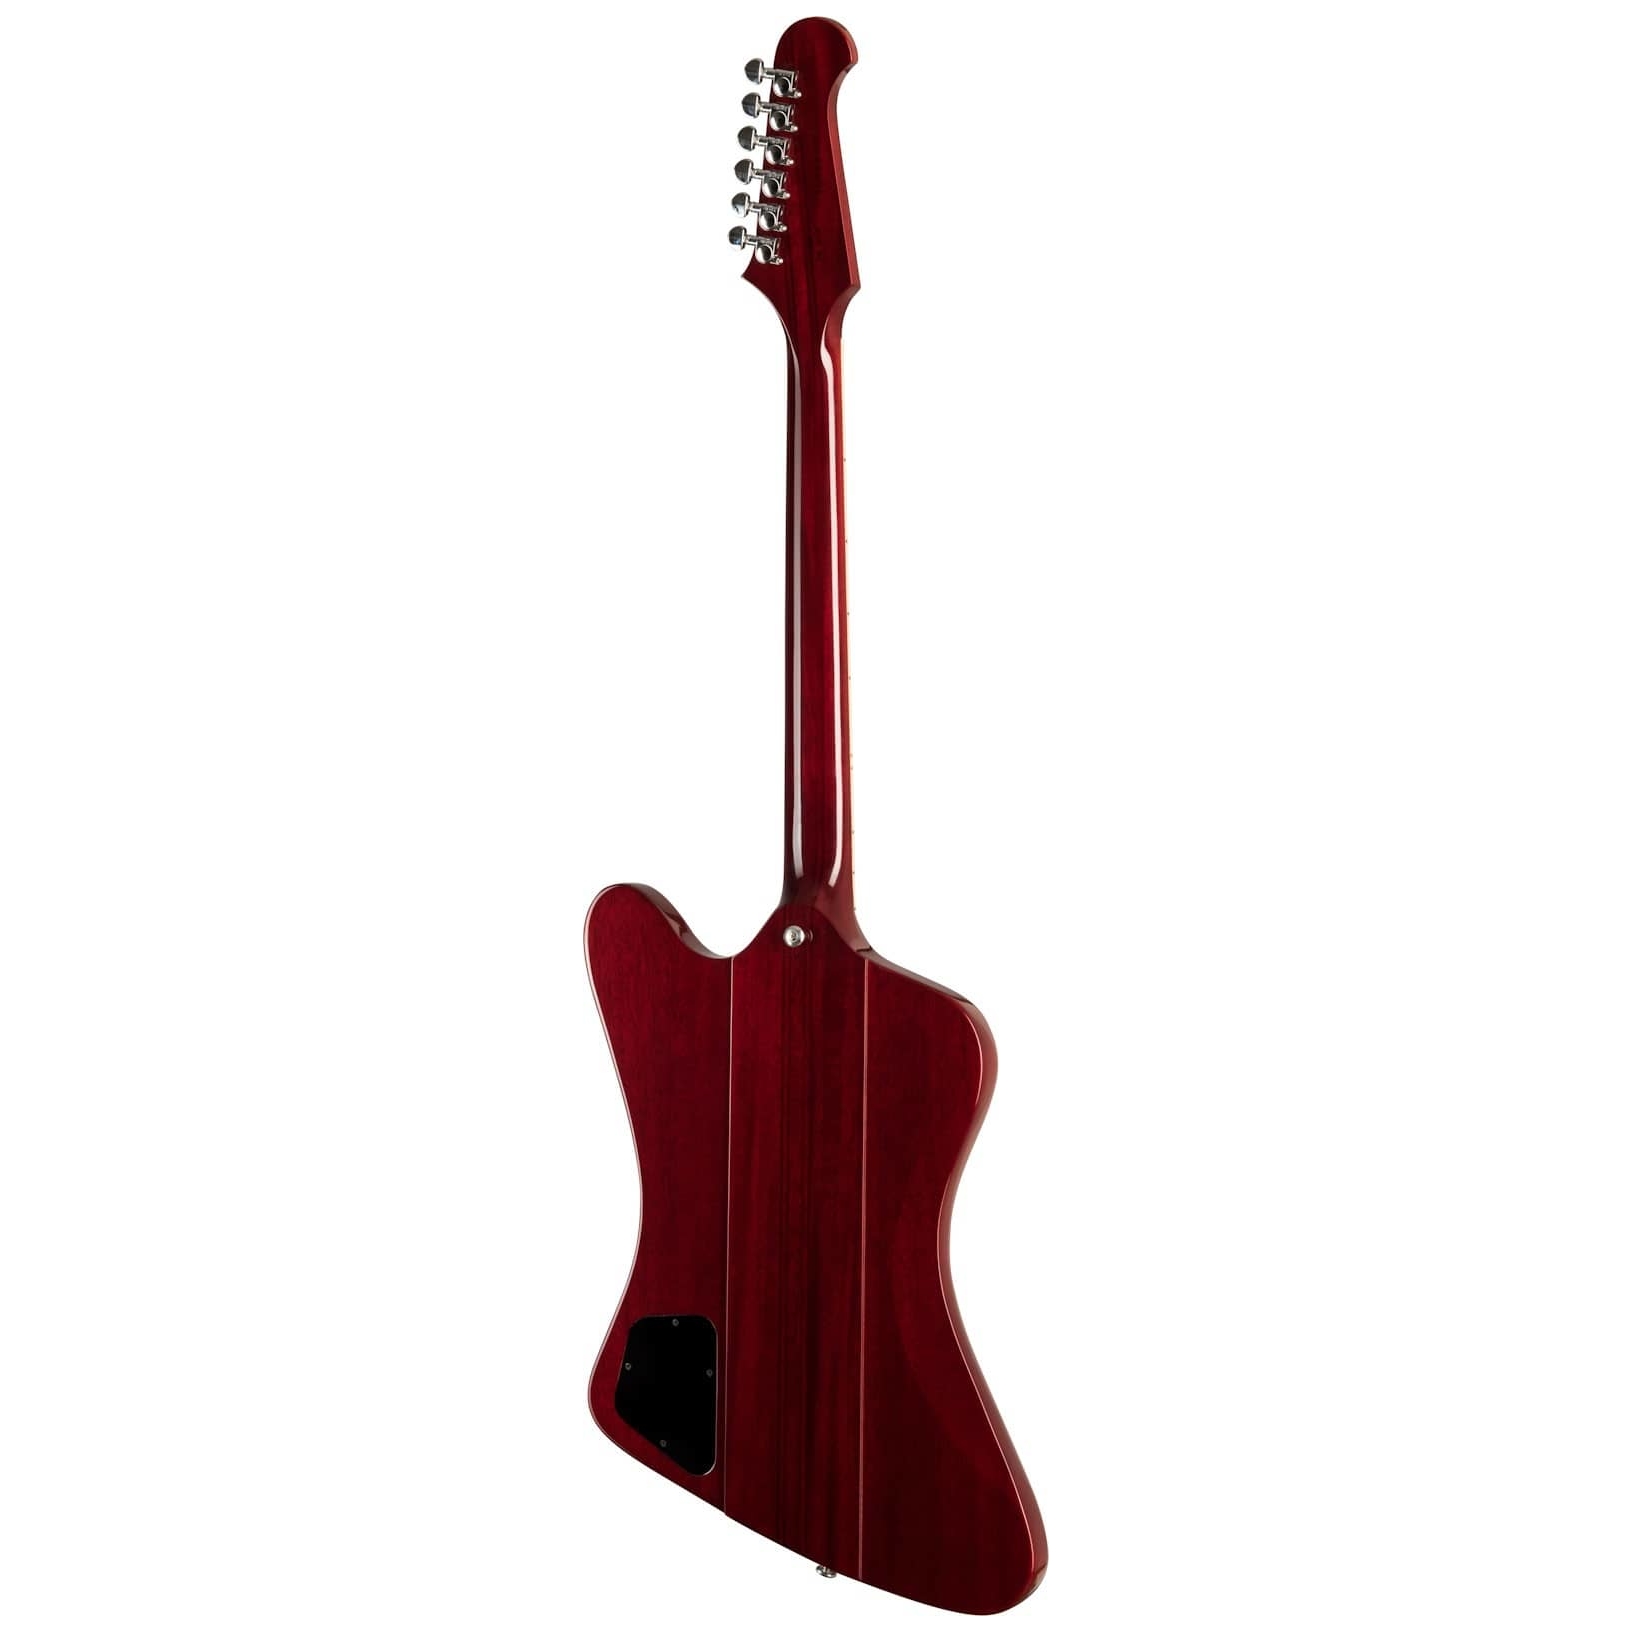 Gibson Firebird Cherry Red